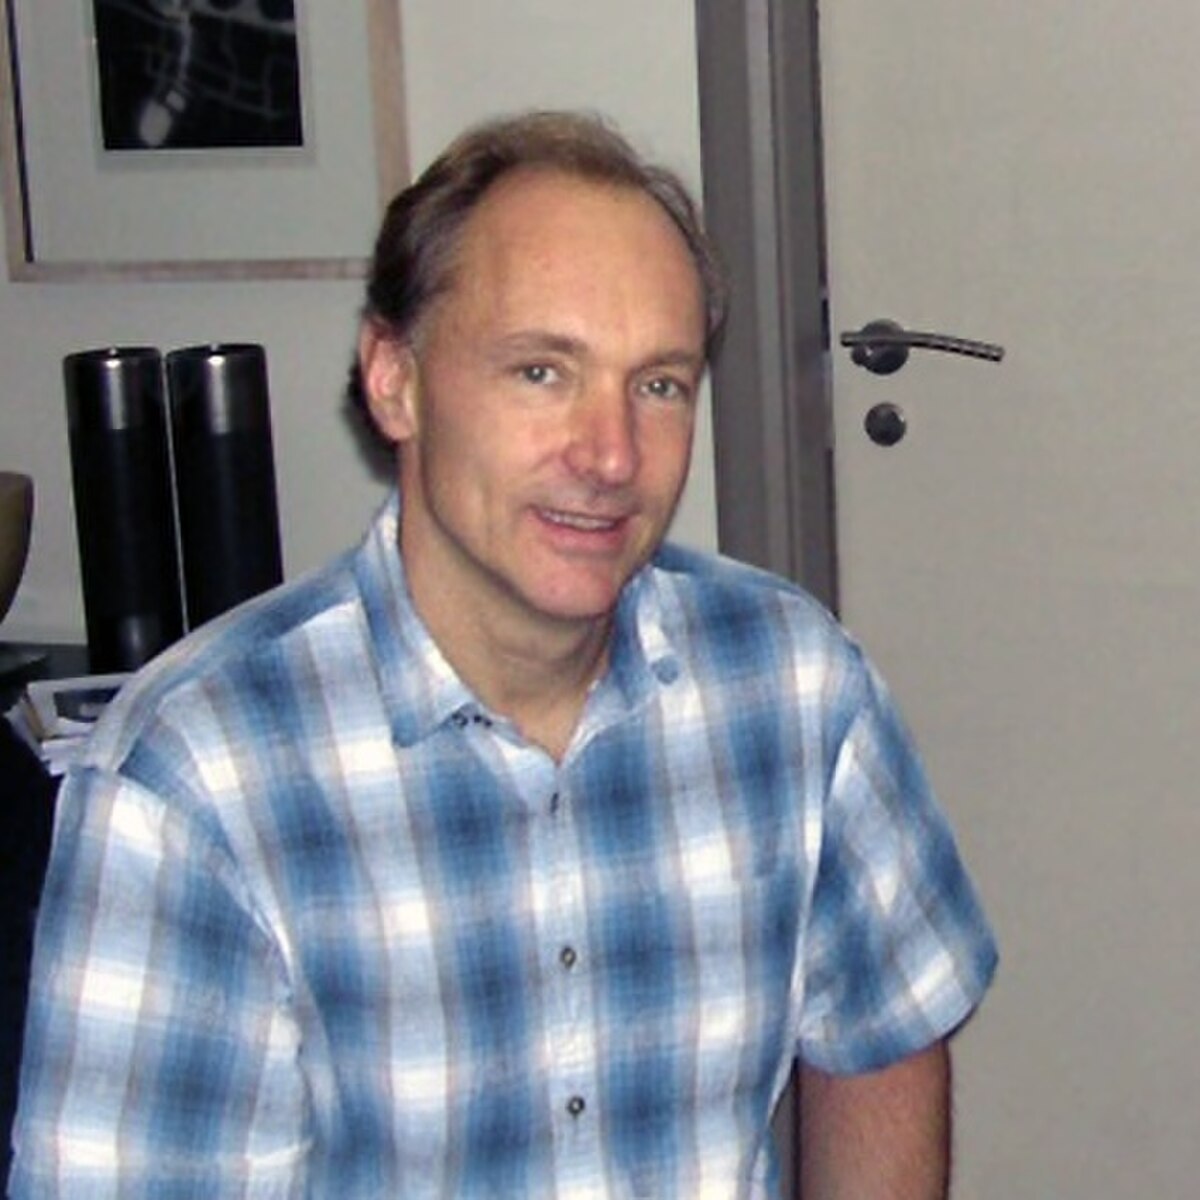 Tim Berners-Lee en 2005